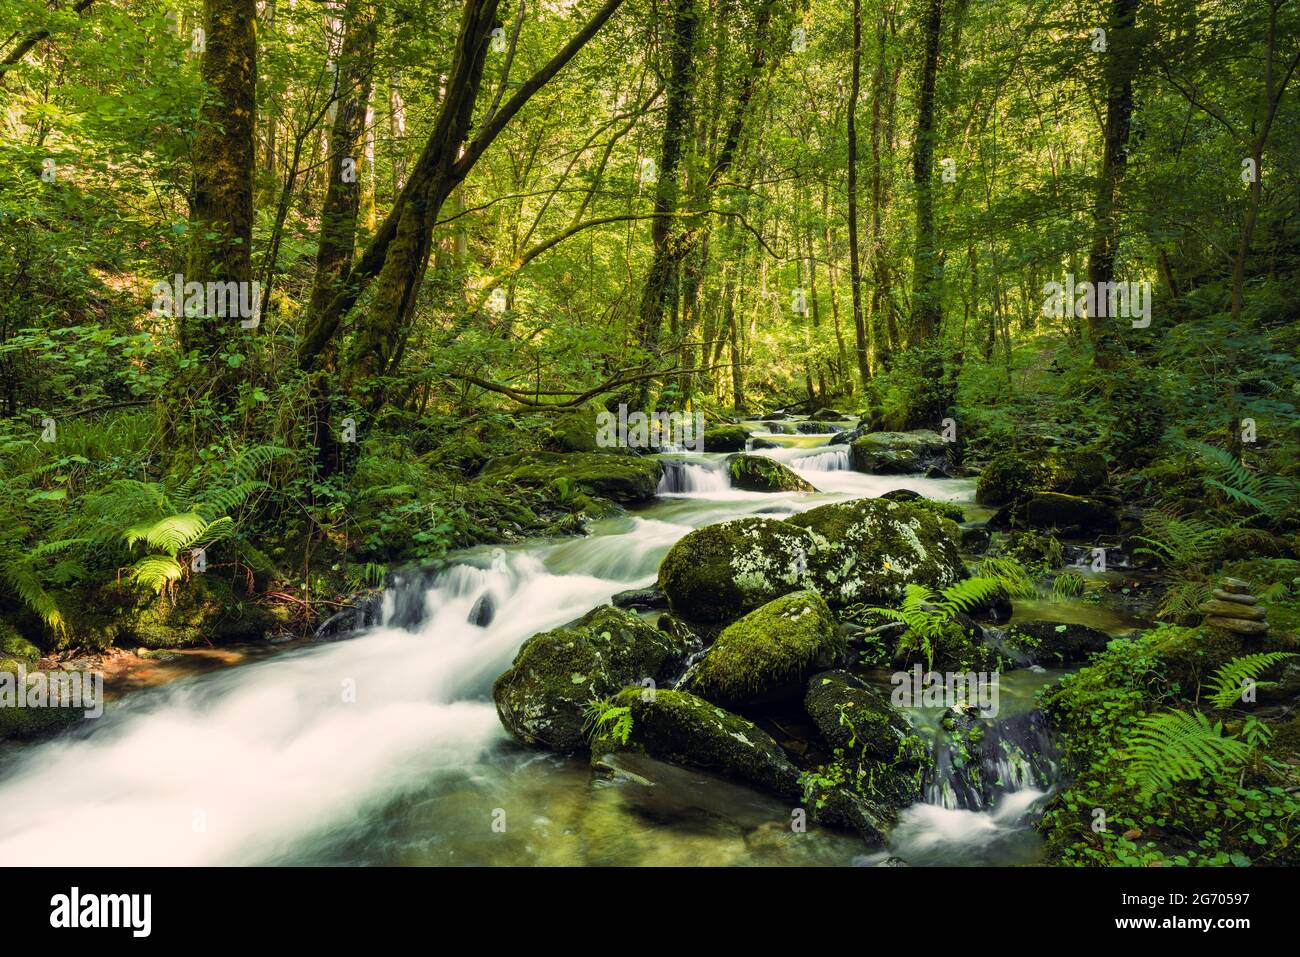 Ruisseau vierge dans une forêt vierge. Rivière Sesin dans le parc naturel de as Fragas do Eume en Galice, Espagne. Banque D'Images